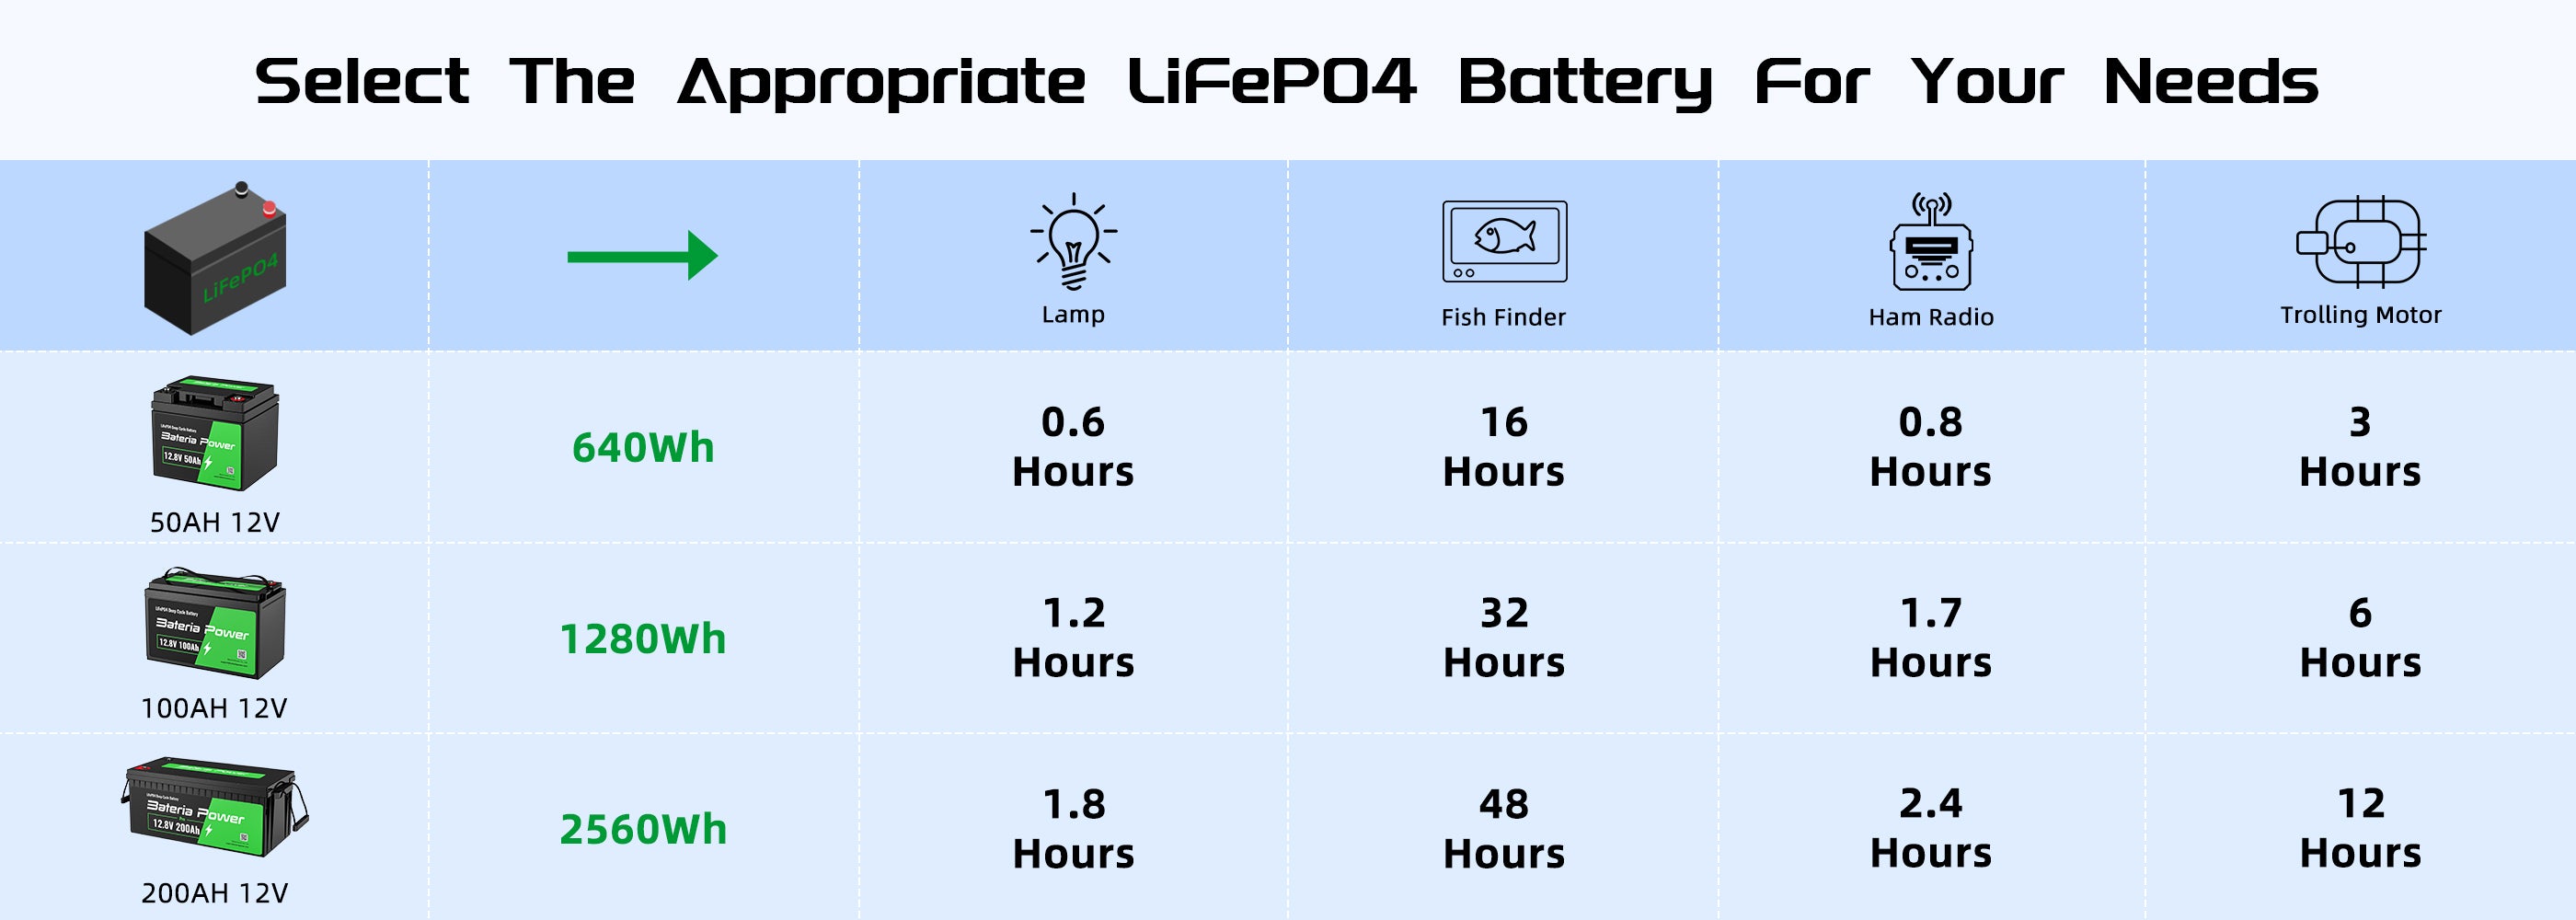 Bateria Power 12V 200Ah LiFePO4 Battery